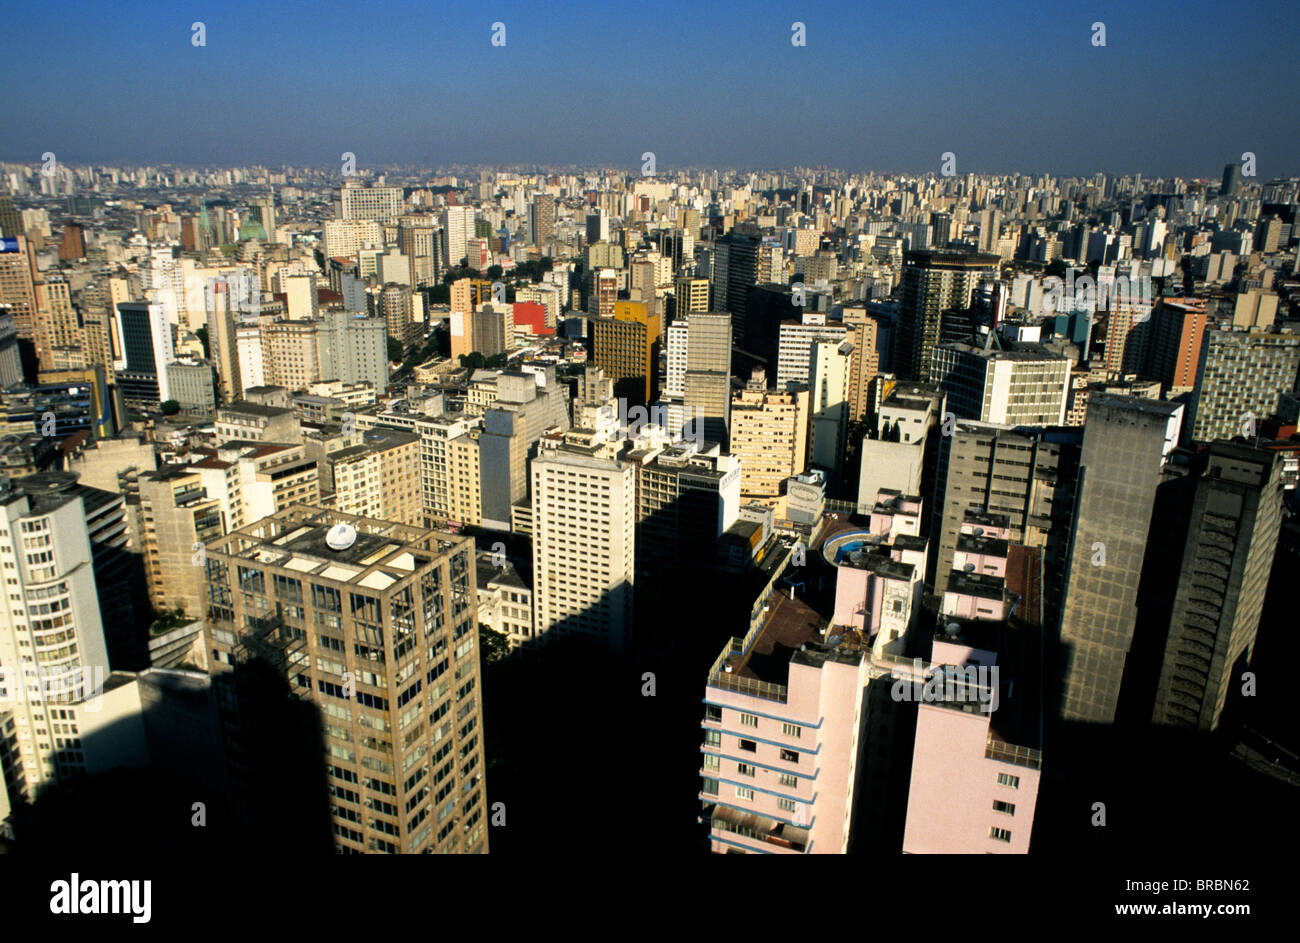 São Paulo city skyline from the rooftop observation deck of Edifício Itália Stock Photo